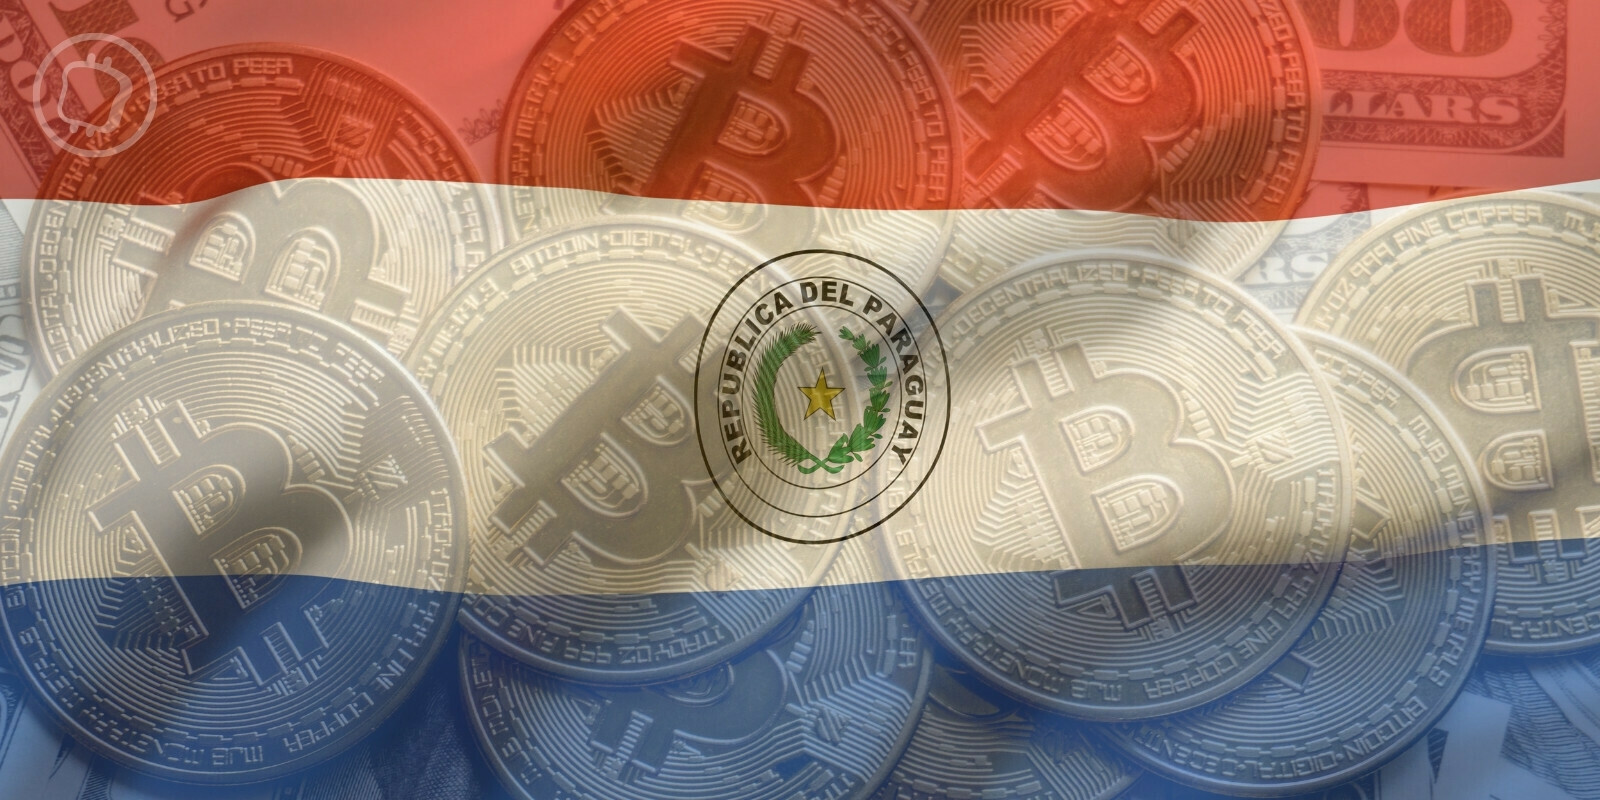 Le président du Paraguay oppose son veto à la loi sur la régulation des cryptomonnaies